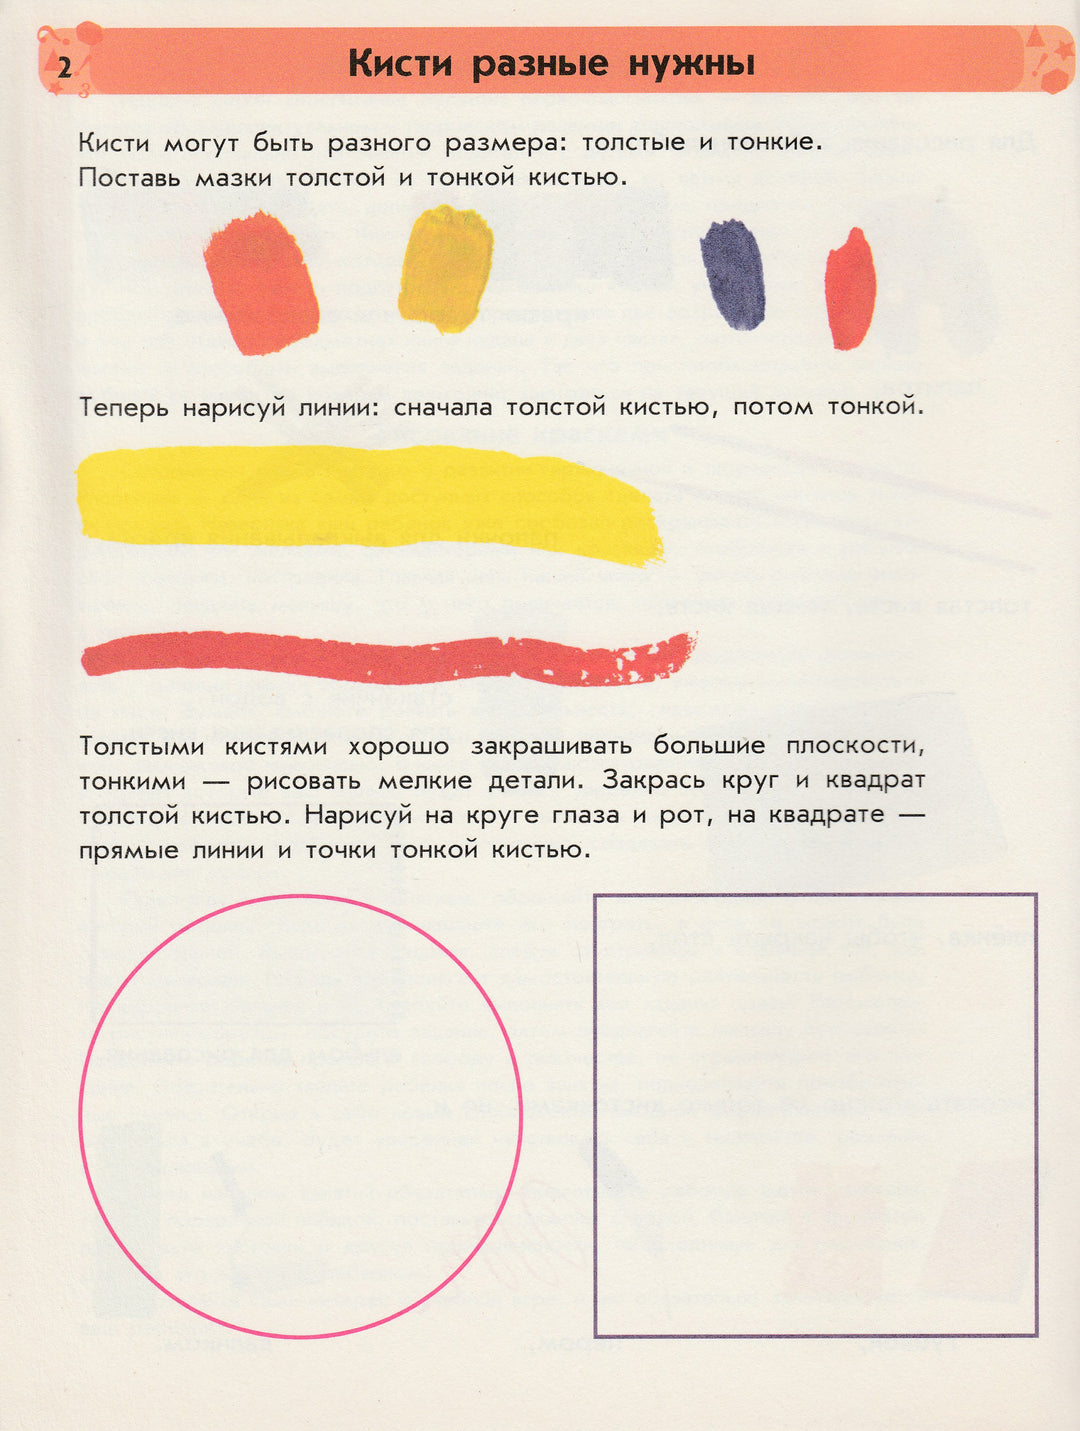 Рисование красками. Часть 1. Уникальная методика развития ребенка 5-6 лет-Коваль Н.-Ранок-Lookomorie